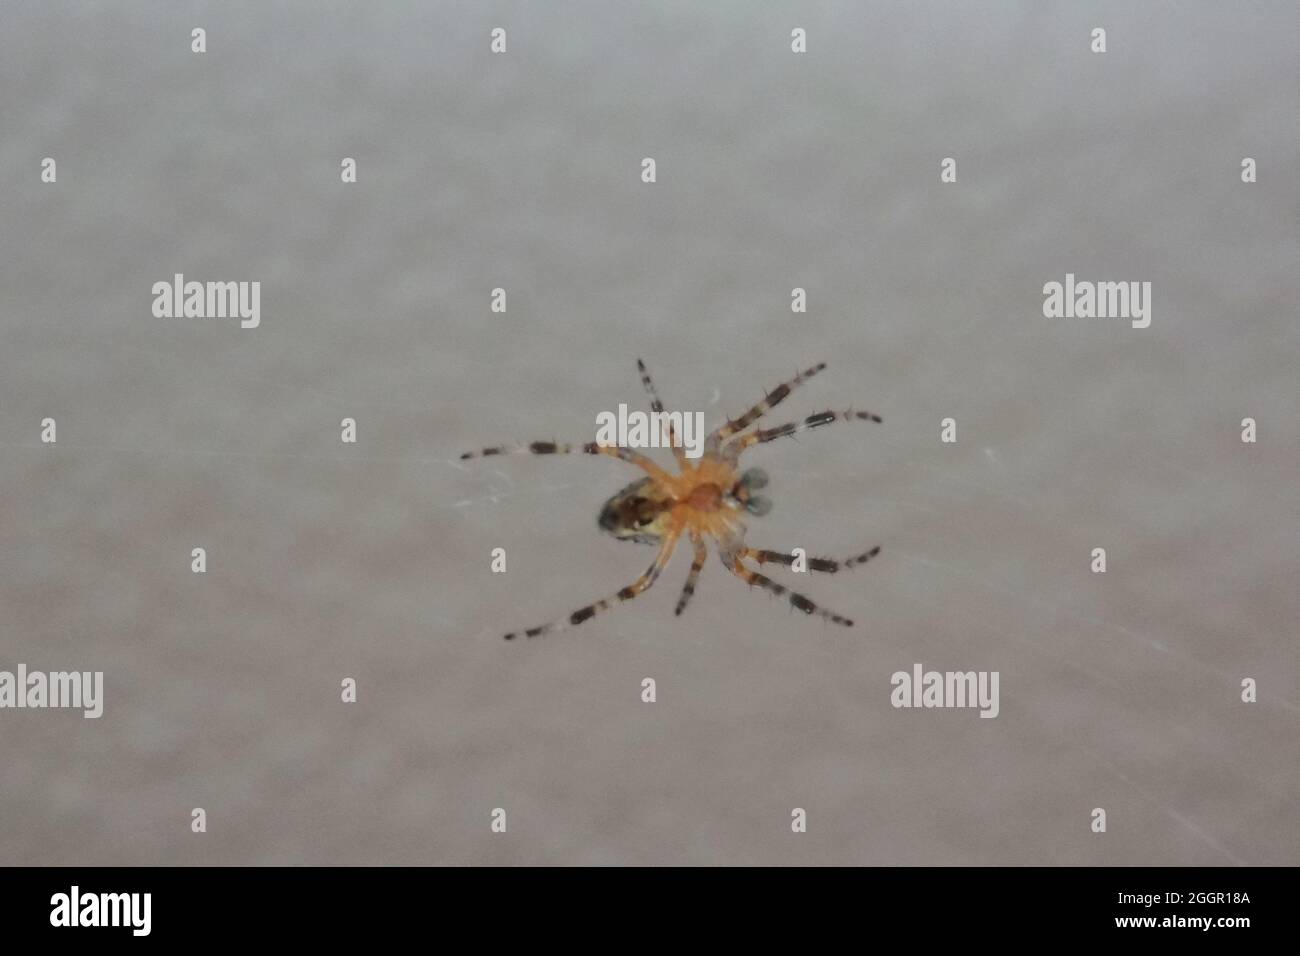 Kleines Insekt Spinne im Netz Stock Photo